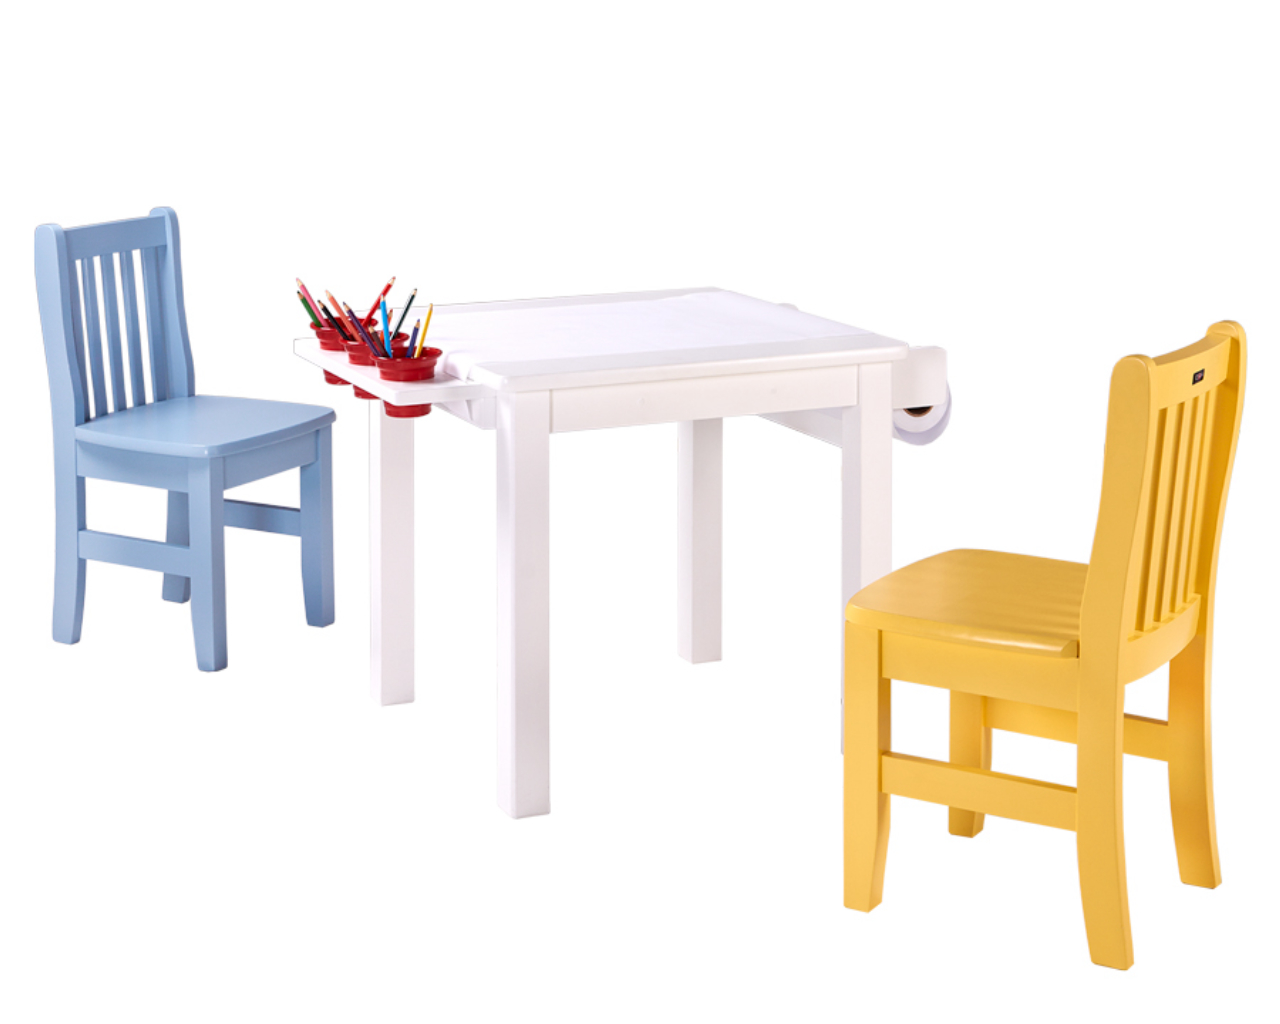 O conjunto de mesa, porta lápis, porta papel e duas cadeirinhas sai a partir de R$ 989. Foto:<br> divulgação